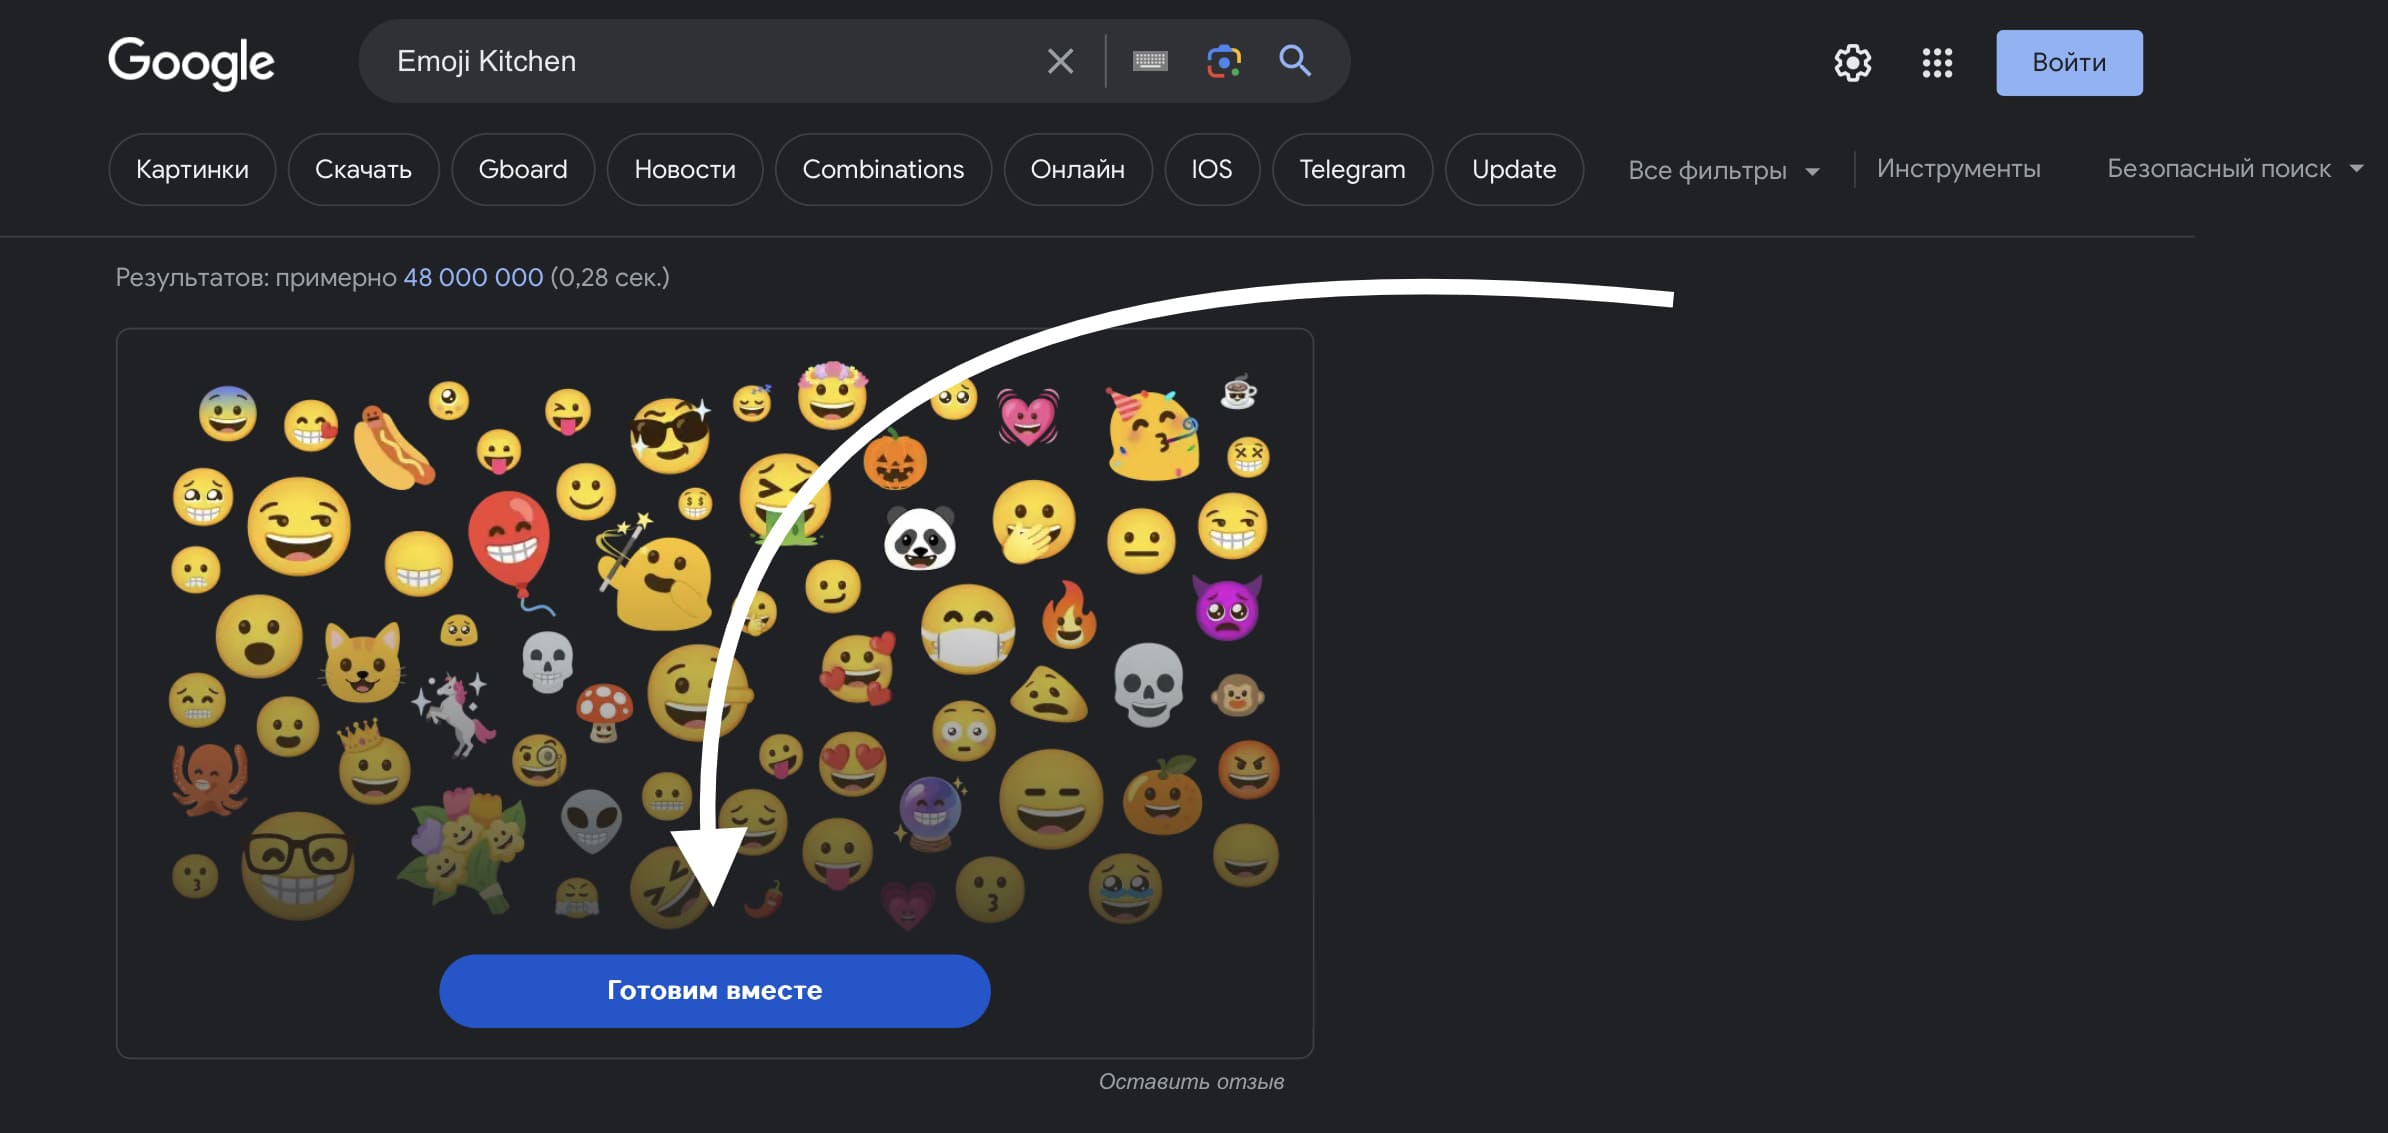 Emoji Kitchen в поисковике Google: что это такое и как воспользоваться  фото 1